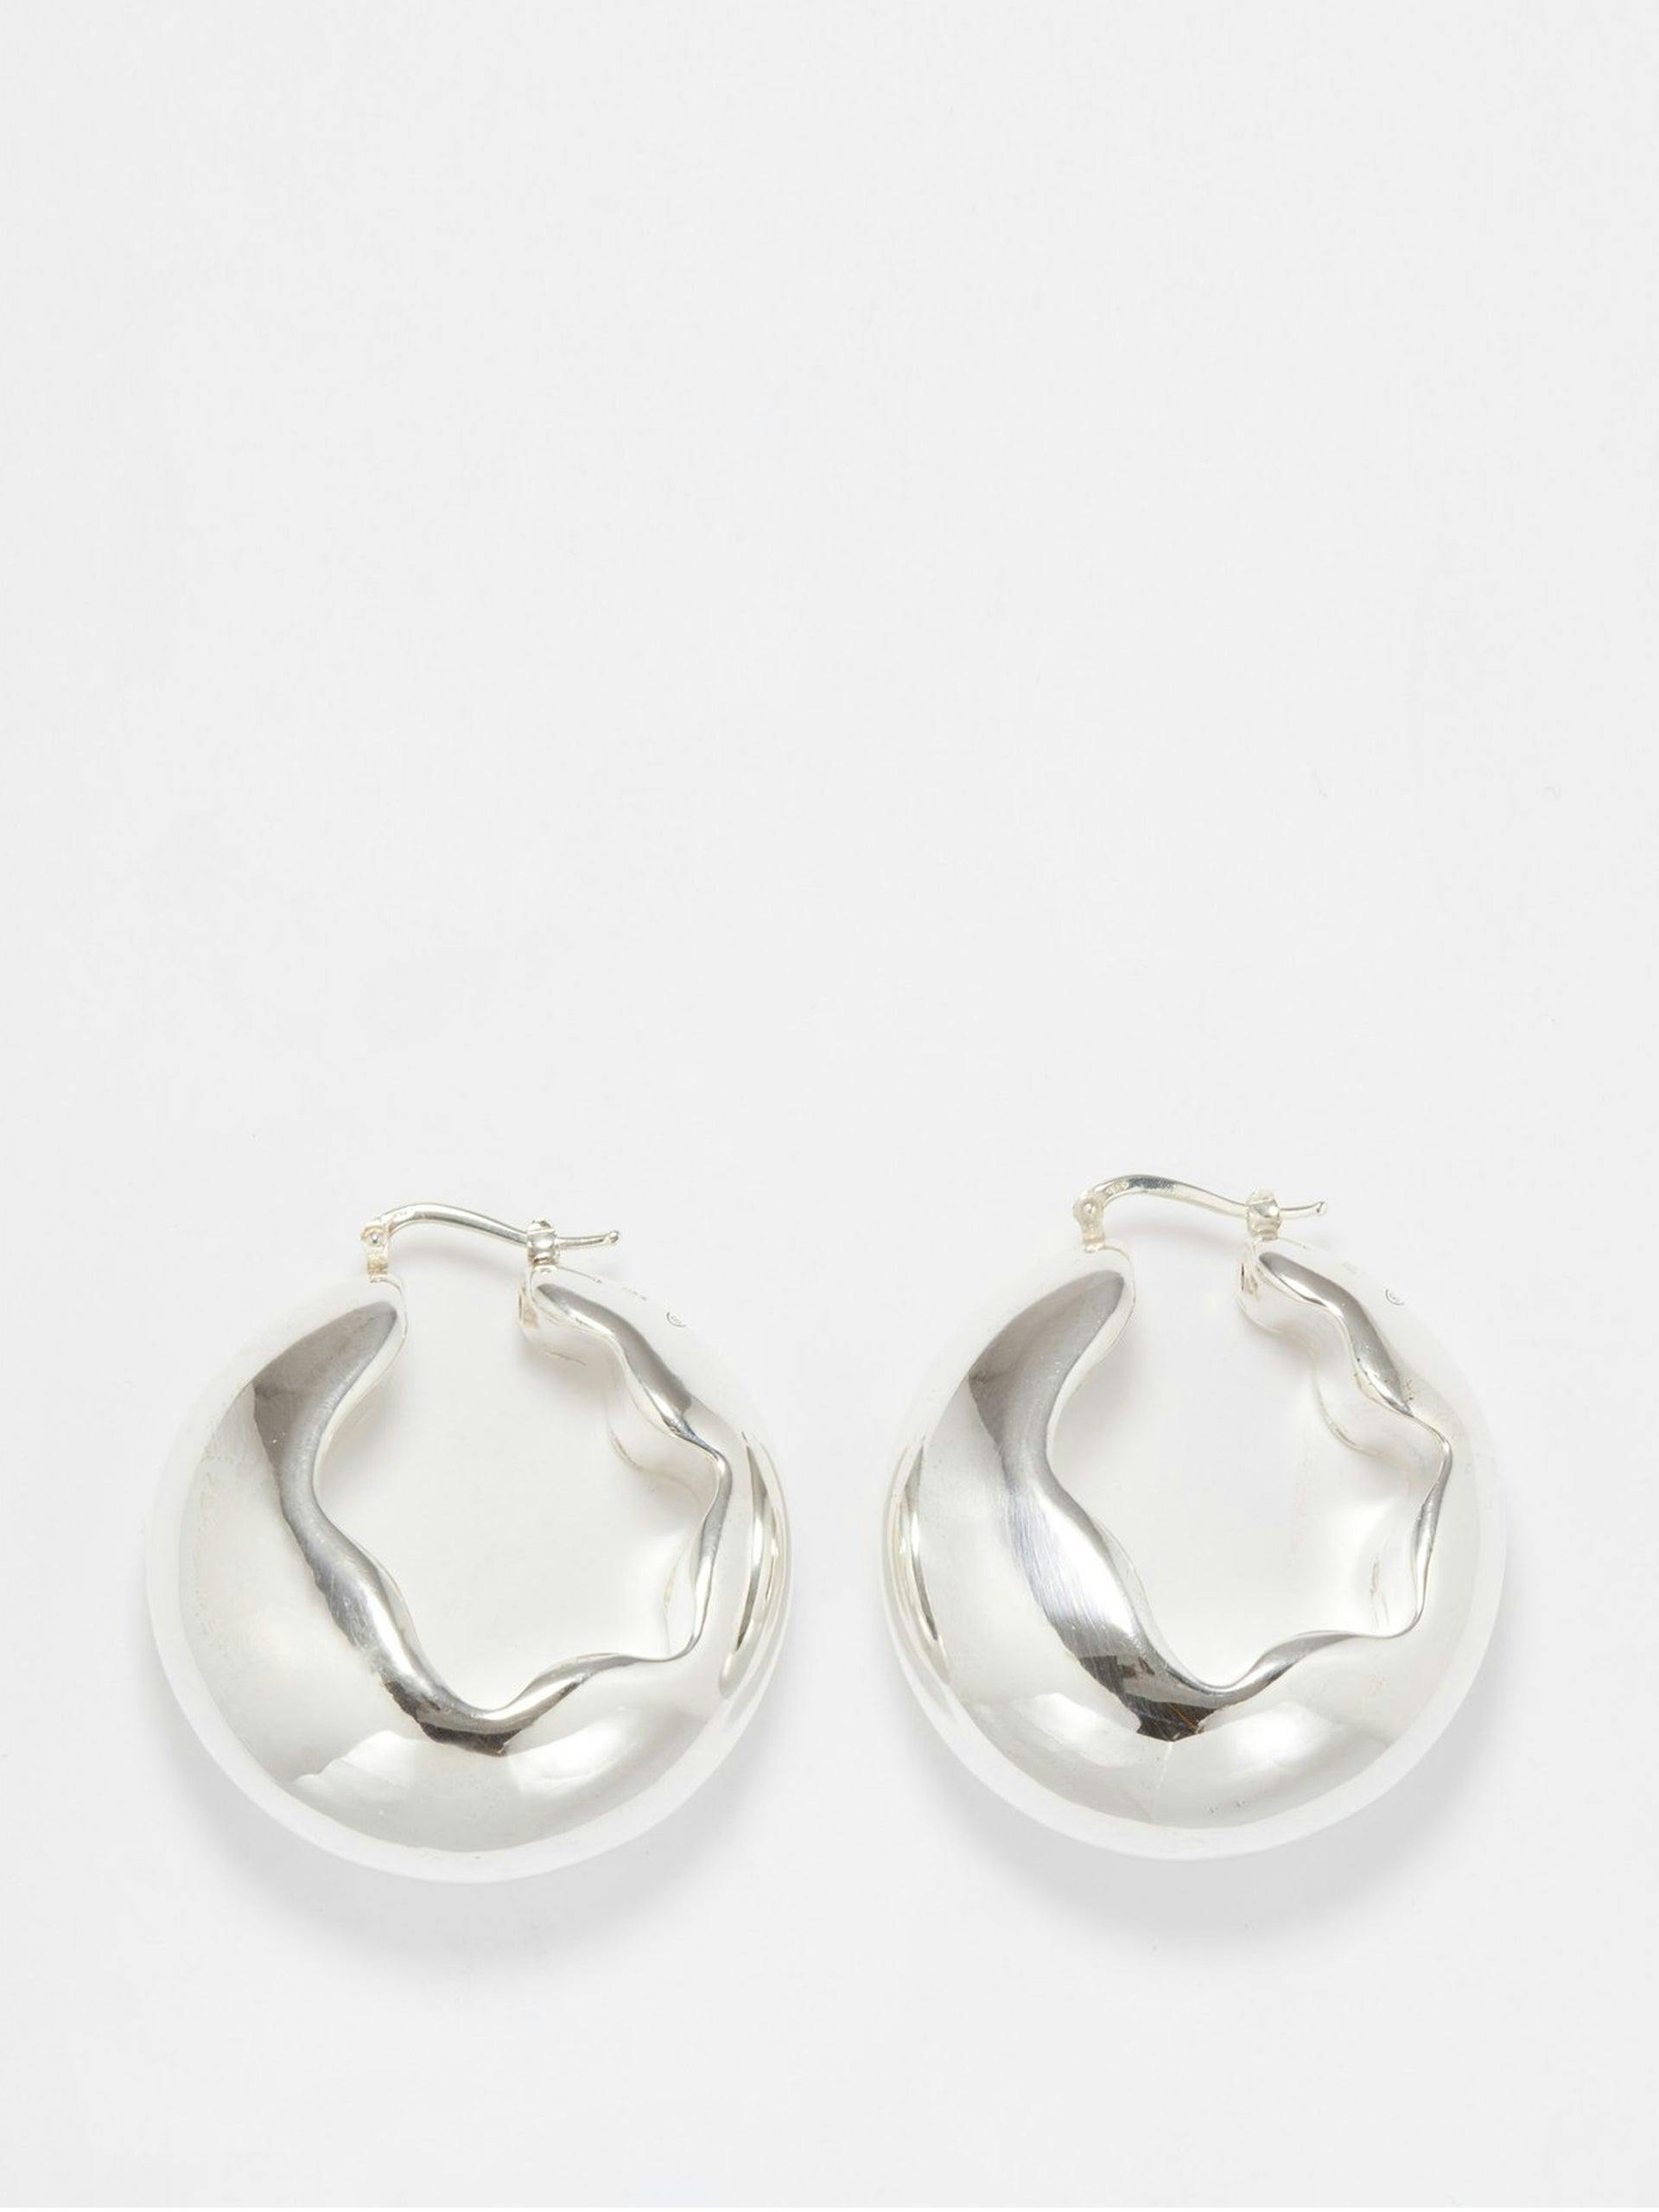 Sterling-silver hoop earrings